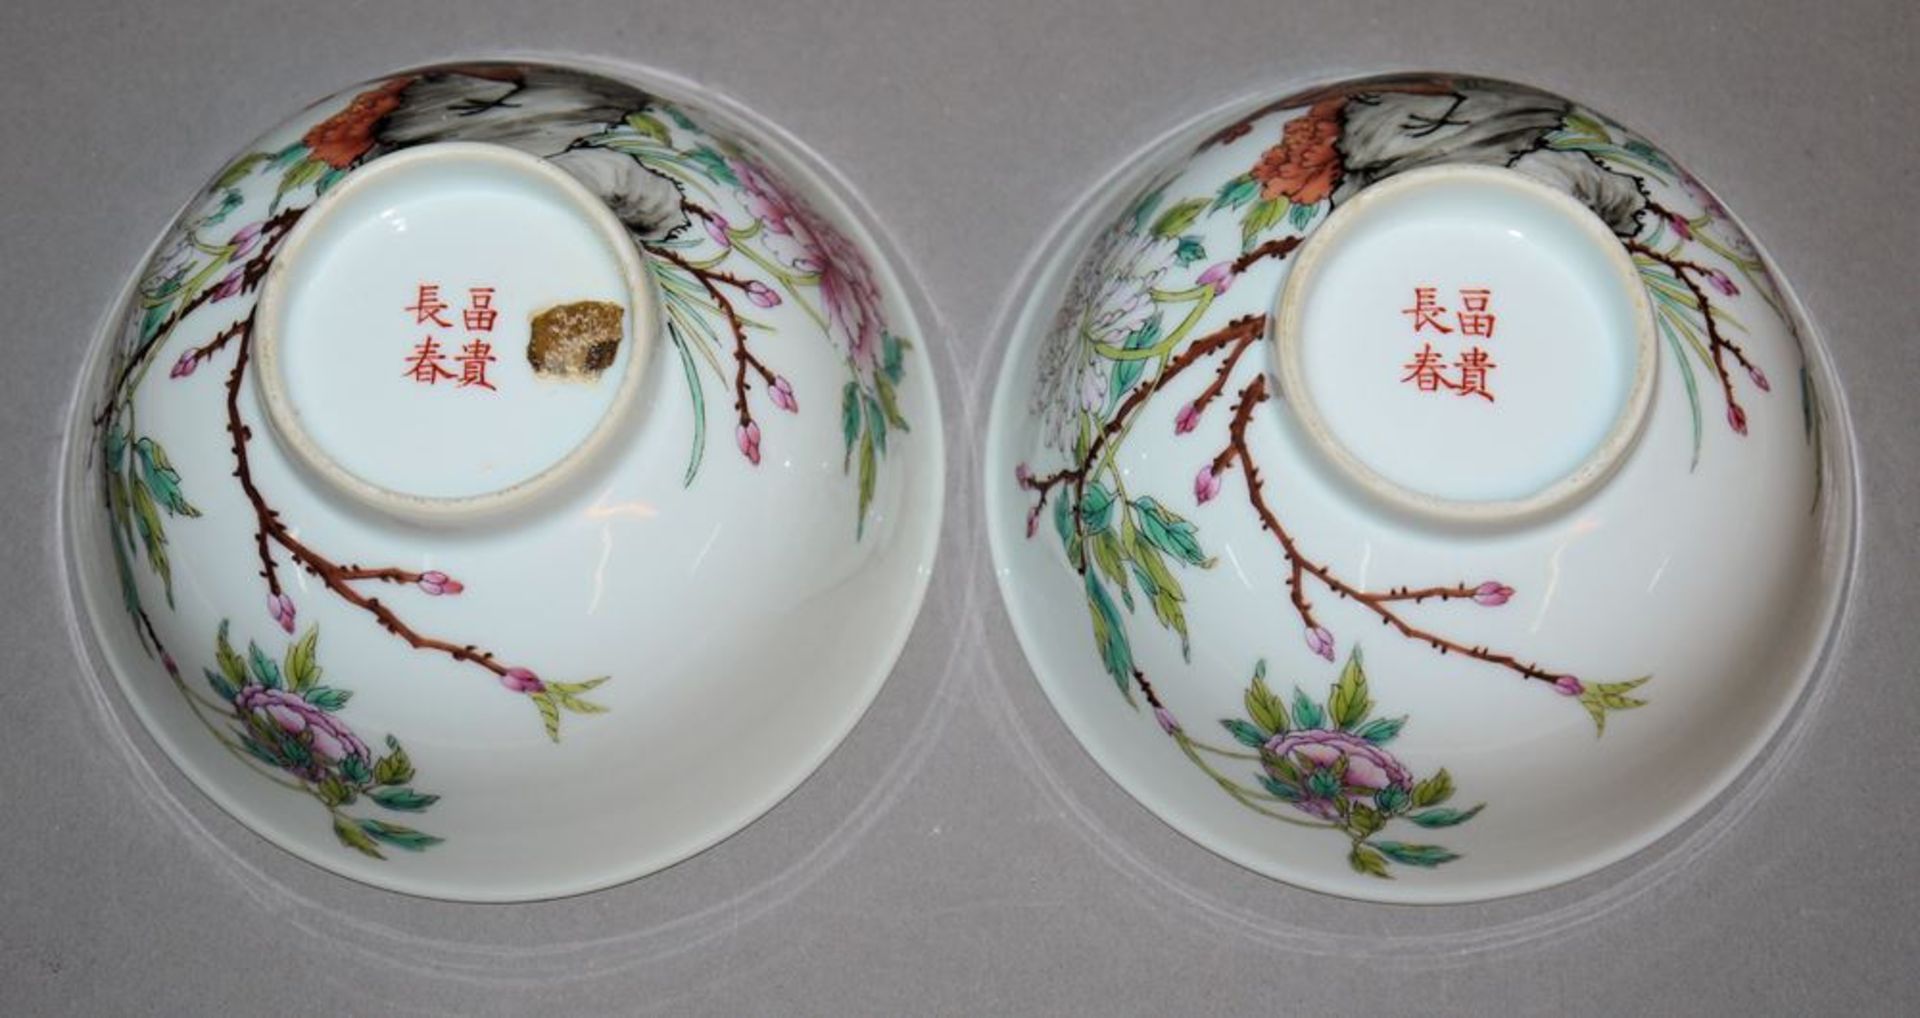 Zwei Speiseschalen mit Hähnen und Blumen, China, 20. Jh. - Bild 2 aus 2